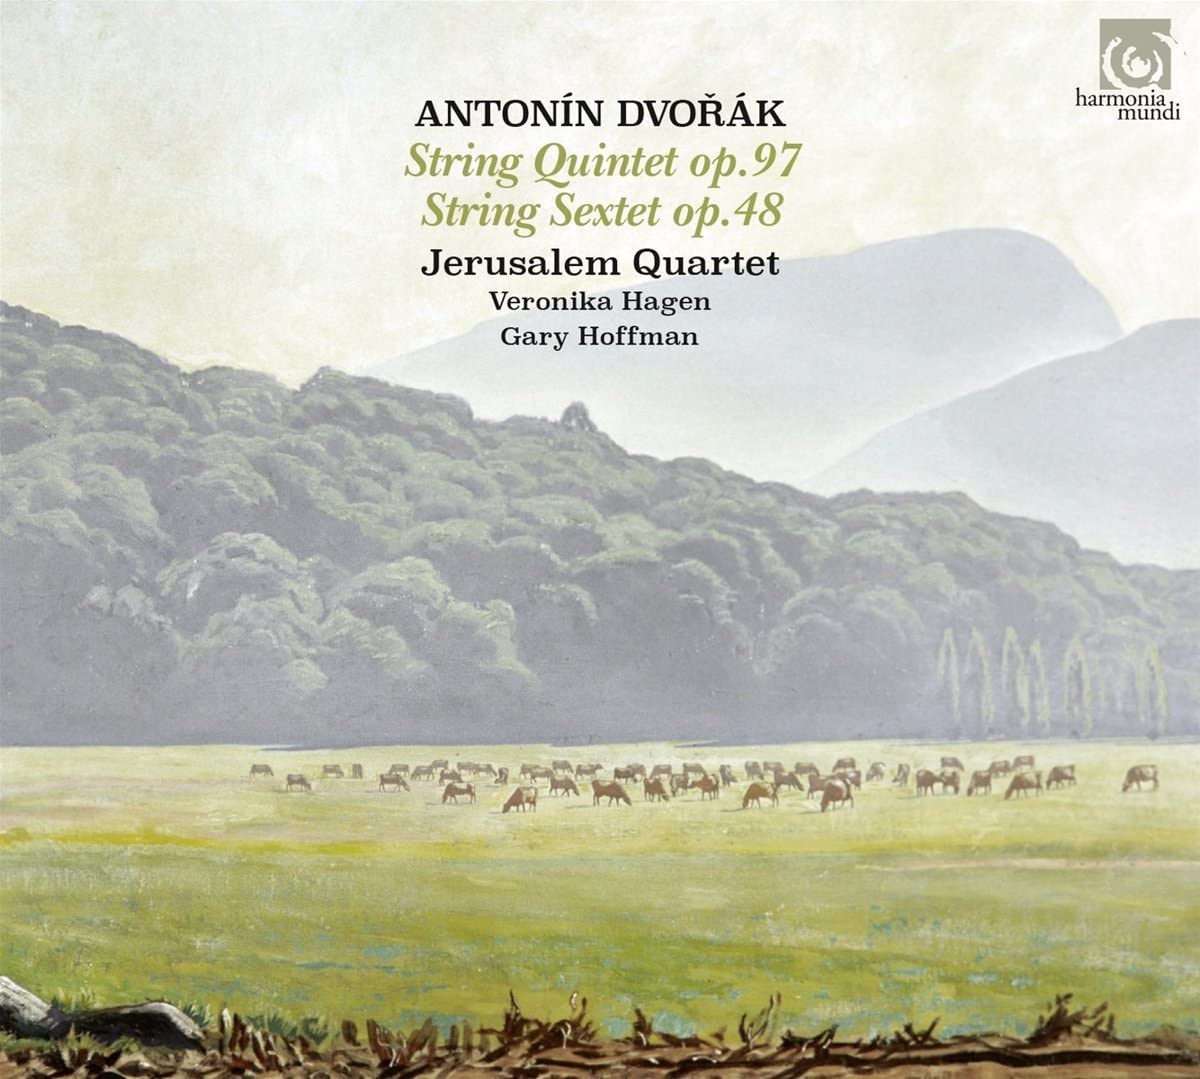 Antonin Dvorak: String Quintet, Op. 97/String Sextet, Op. 48 | Antonin Dvorak